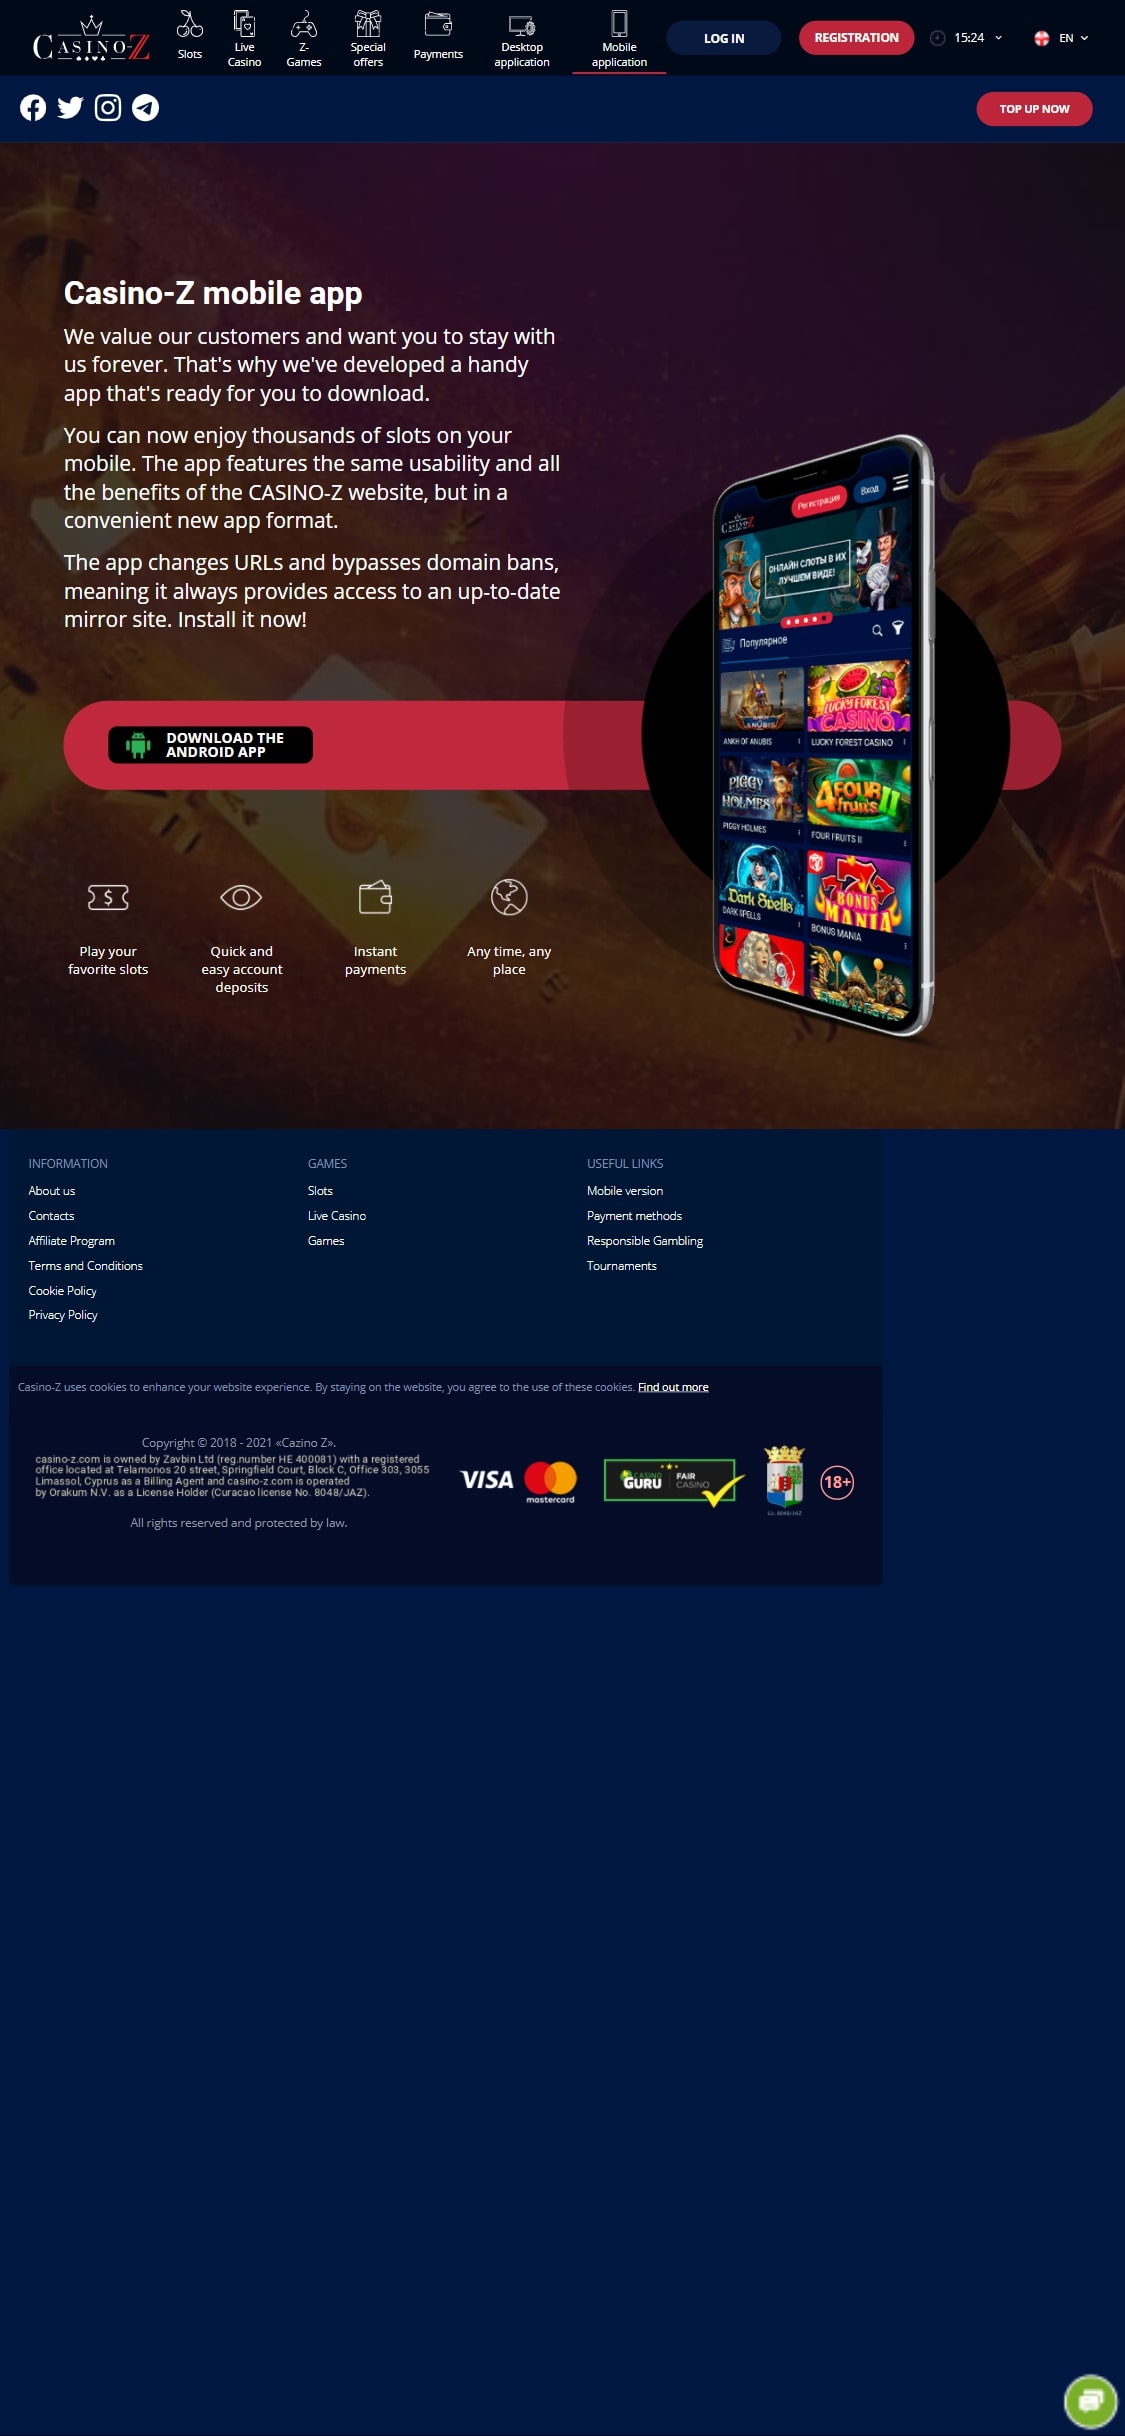 Casino-Z Mobile App Review